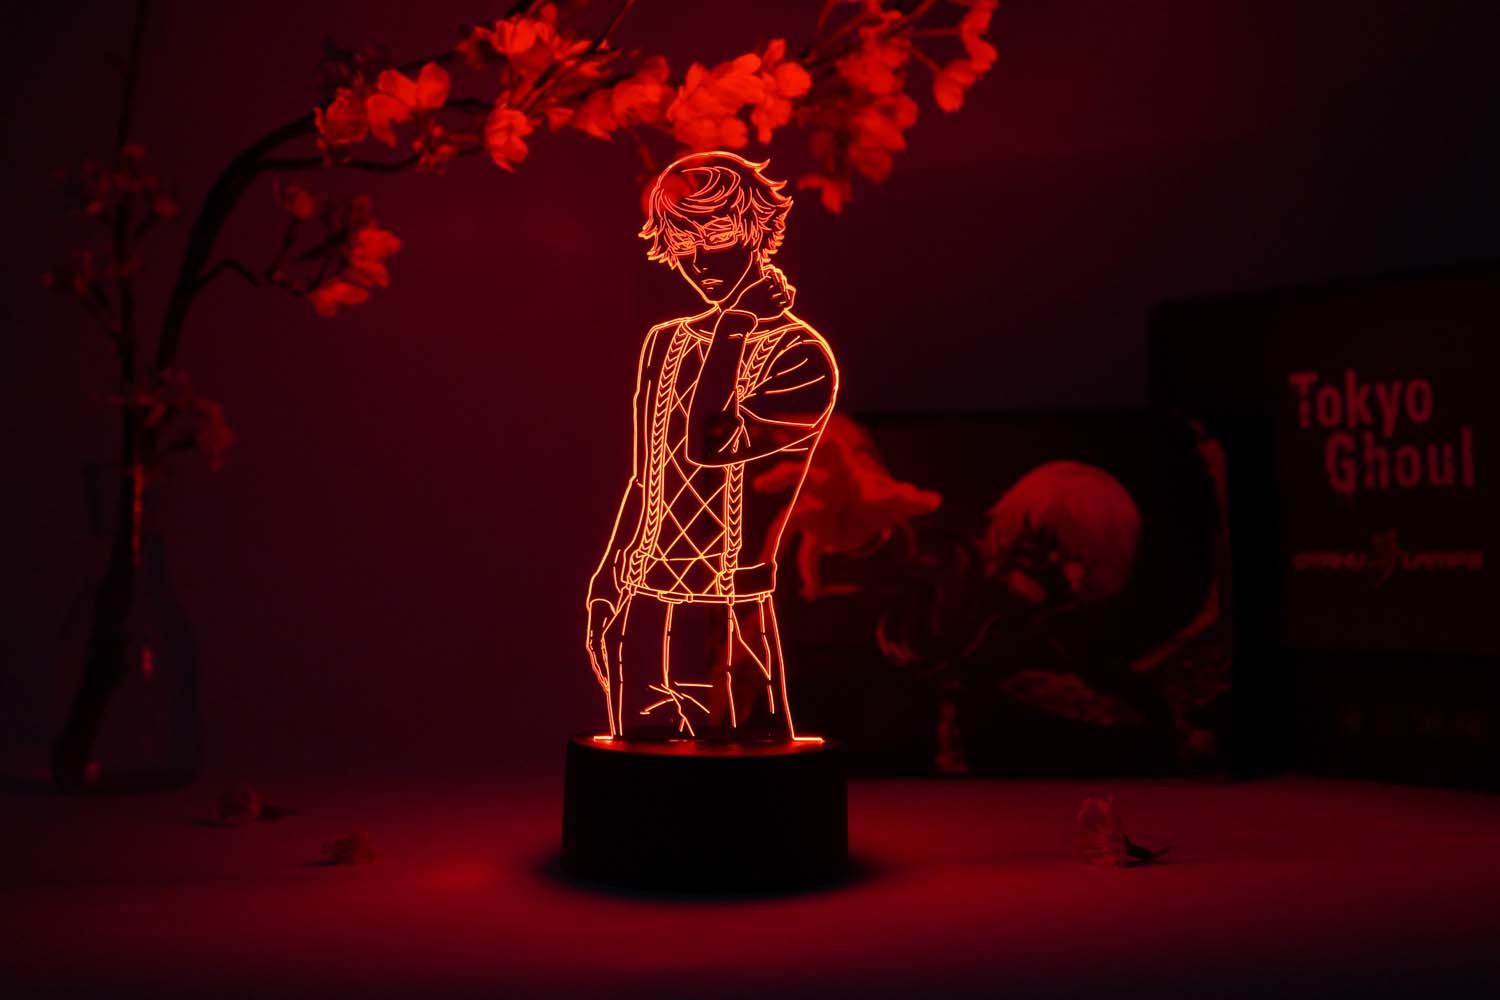 Nishiki Otaku Lamp (Tokyo Ghoul)